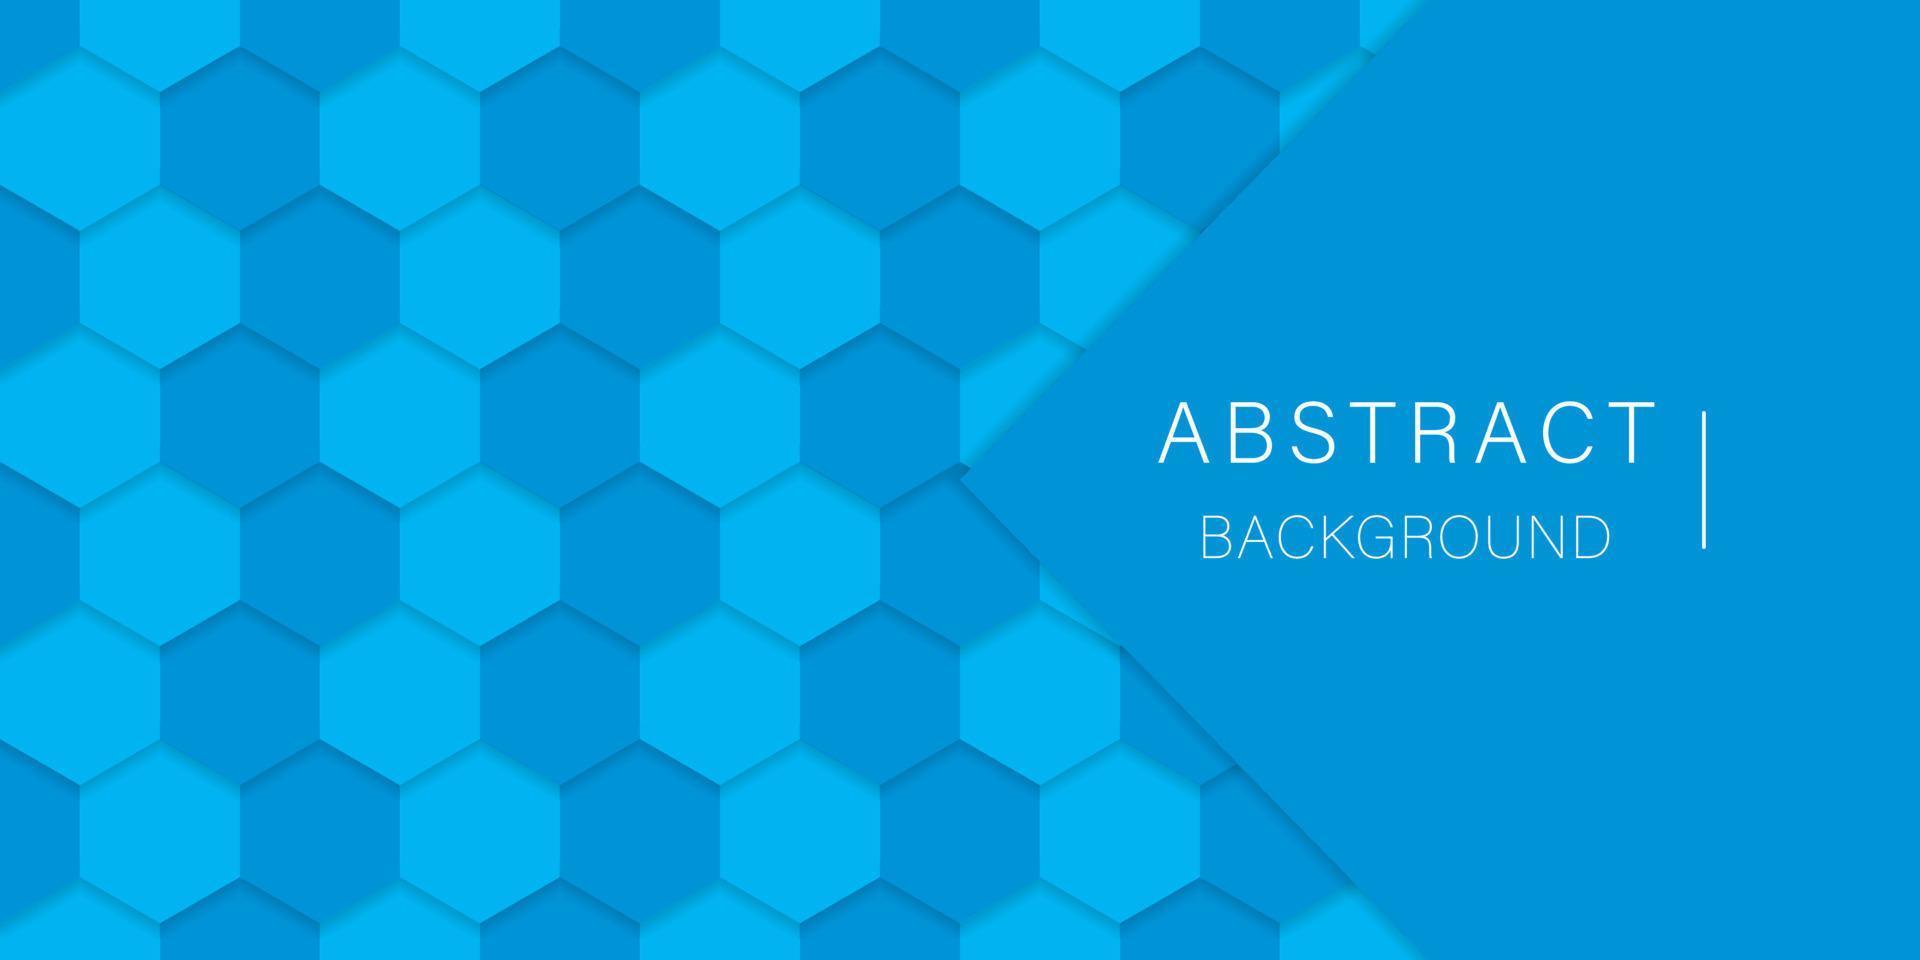 futuristisk ljusblå hexagon bakgrund. sexkantigt ljusblått mönster. digital tom blå banner för vetenskap, kemi och teknik. abstrakt 3d modern tapetdesign. vektor illustration.